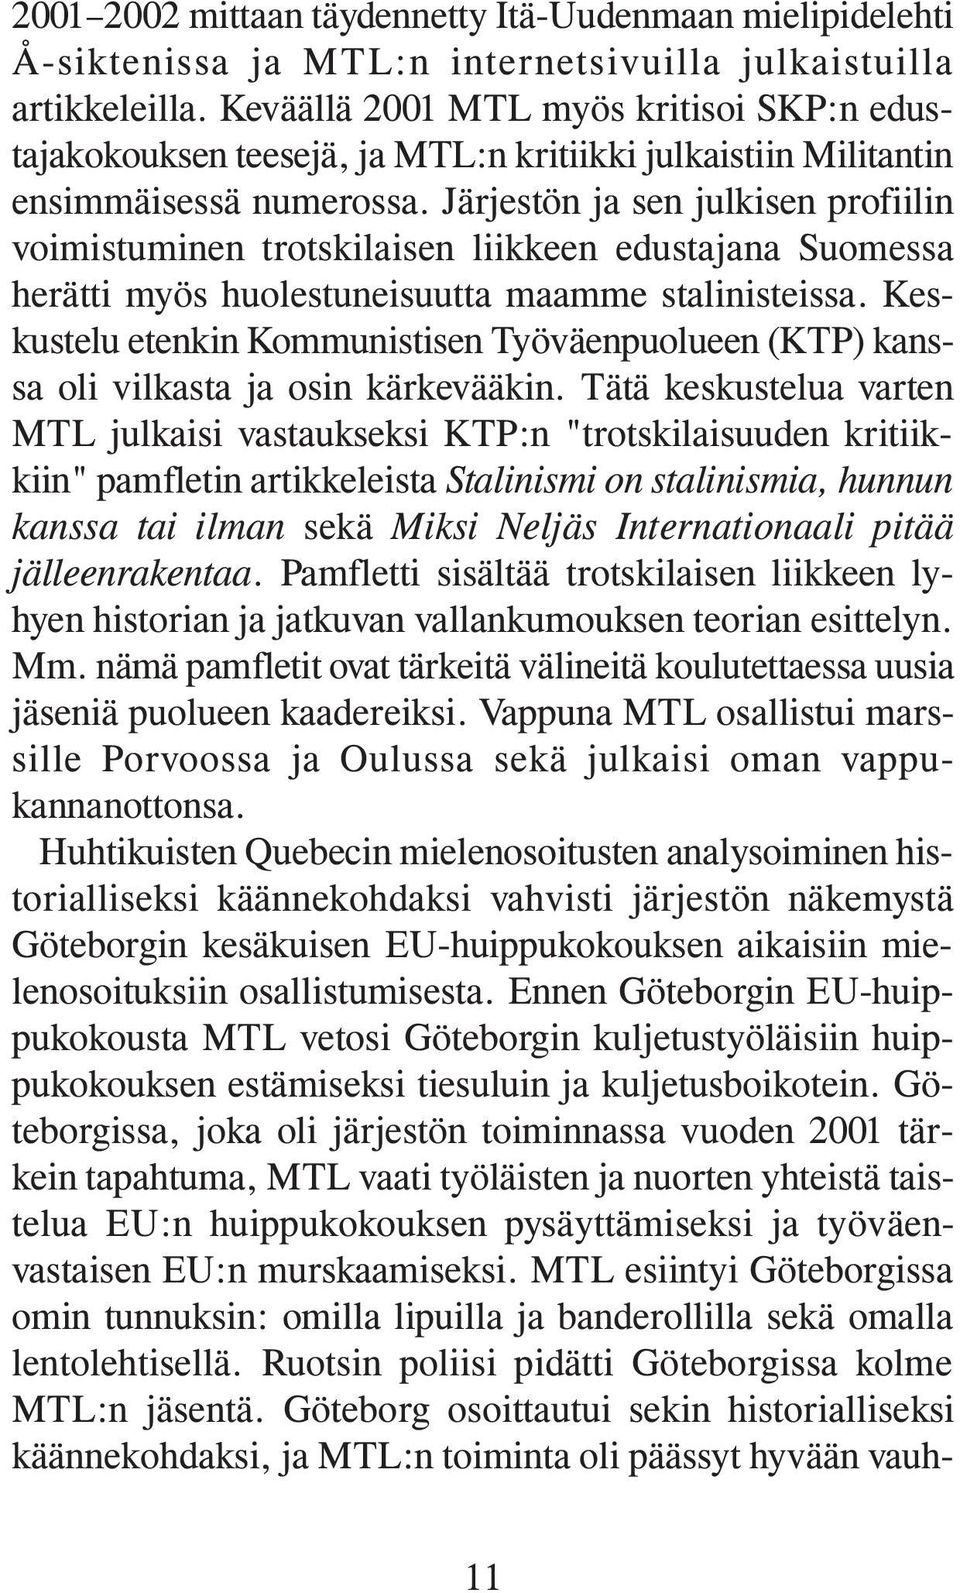 Järjestön ja sen julkisen profiilin voimistuminen trotskilaisen liikkeen edustajana Suomessa herätti myös huolestuneisuutta maamme stalinisteissa.